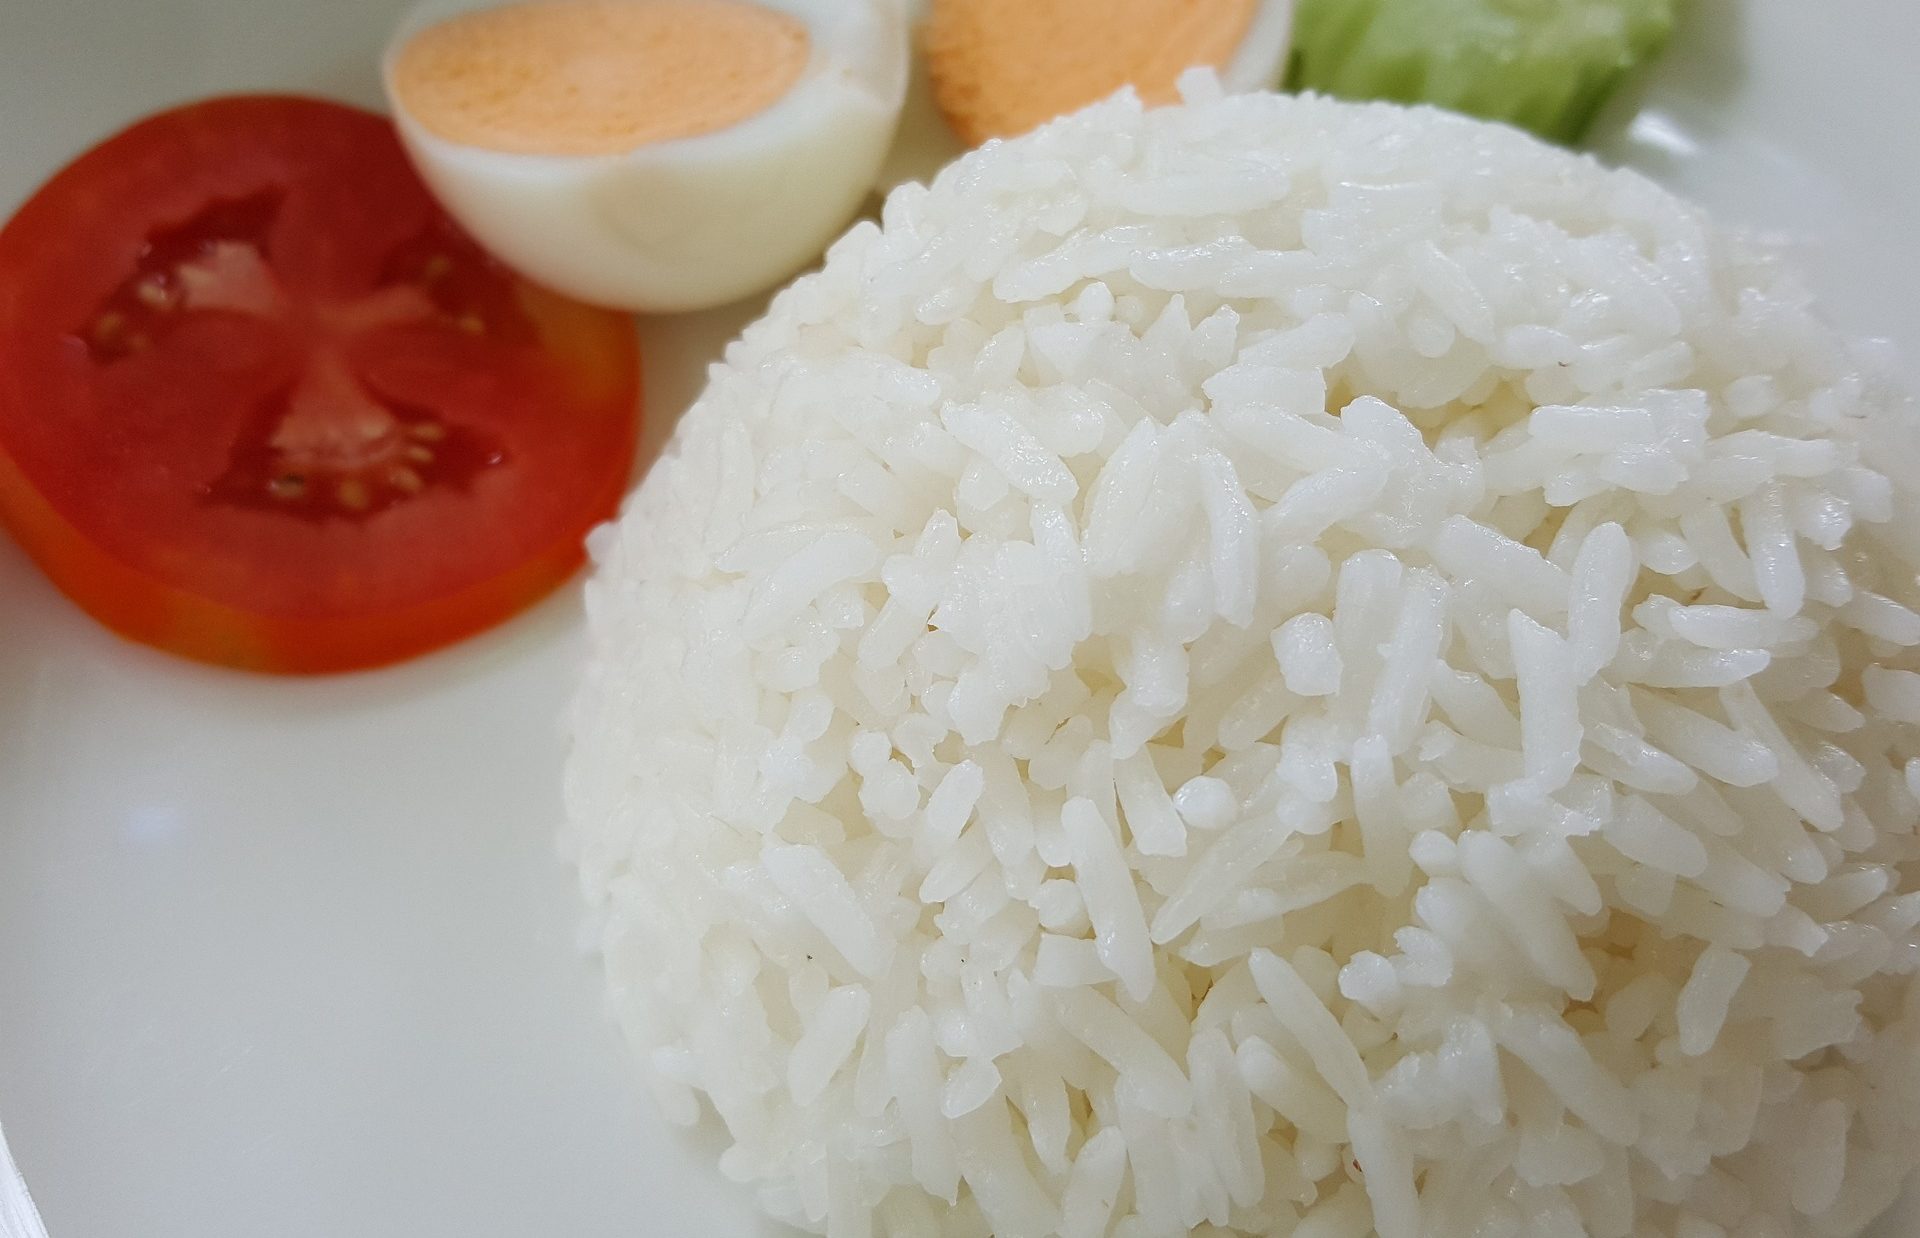 Συνταγή για τέλειο σπυρωτό ρύζι. Φτιάξτε το γευστικό και πεντανόστιμο ρύζι που ταιριάζει ιδανικά σε ατελείωτες συνταγές.